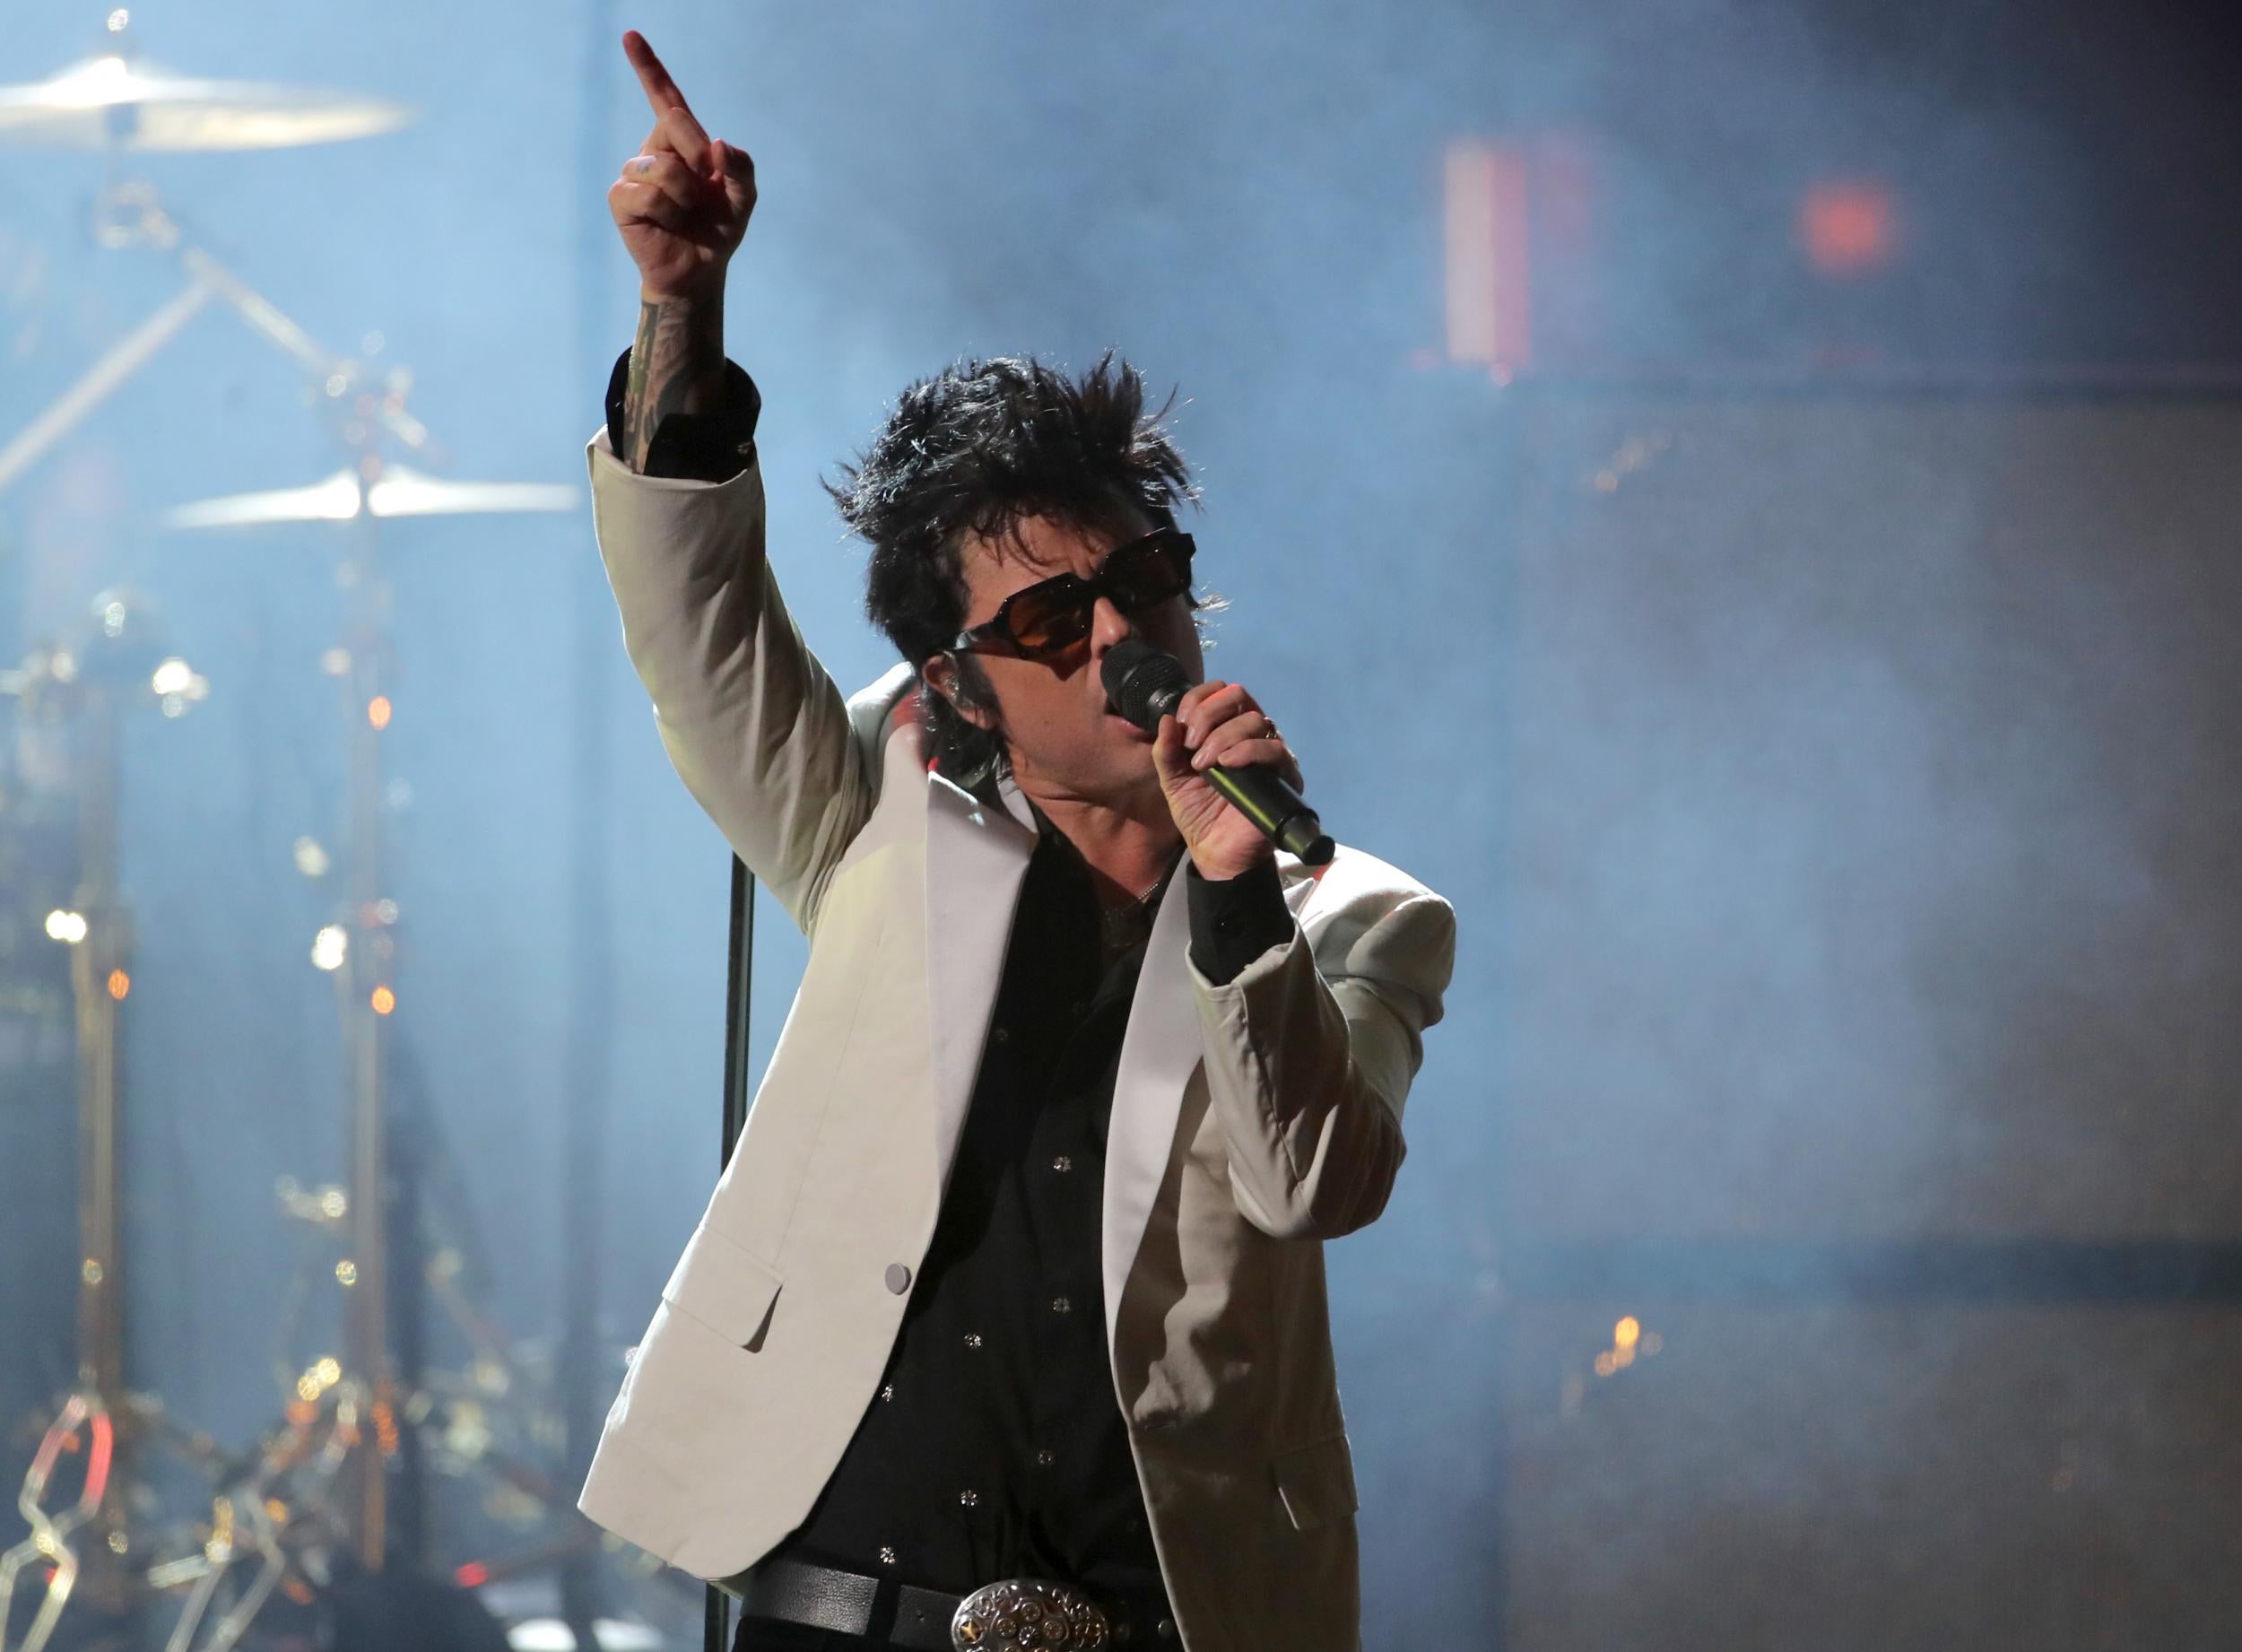 Green Day frontman Billie Joe Armstrong